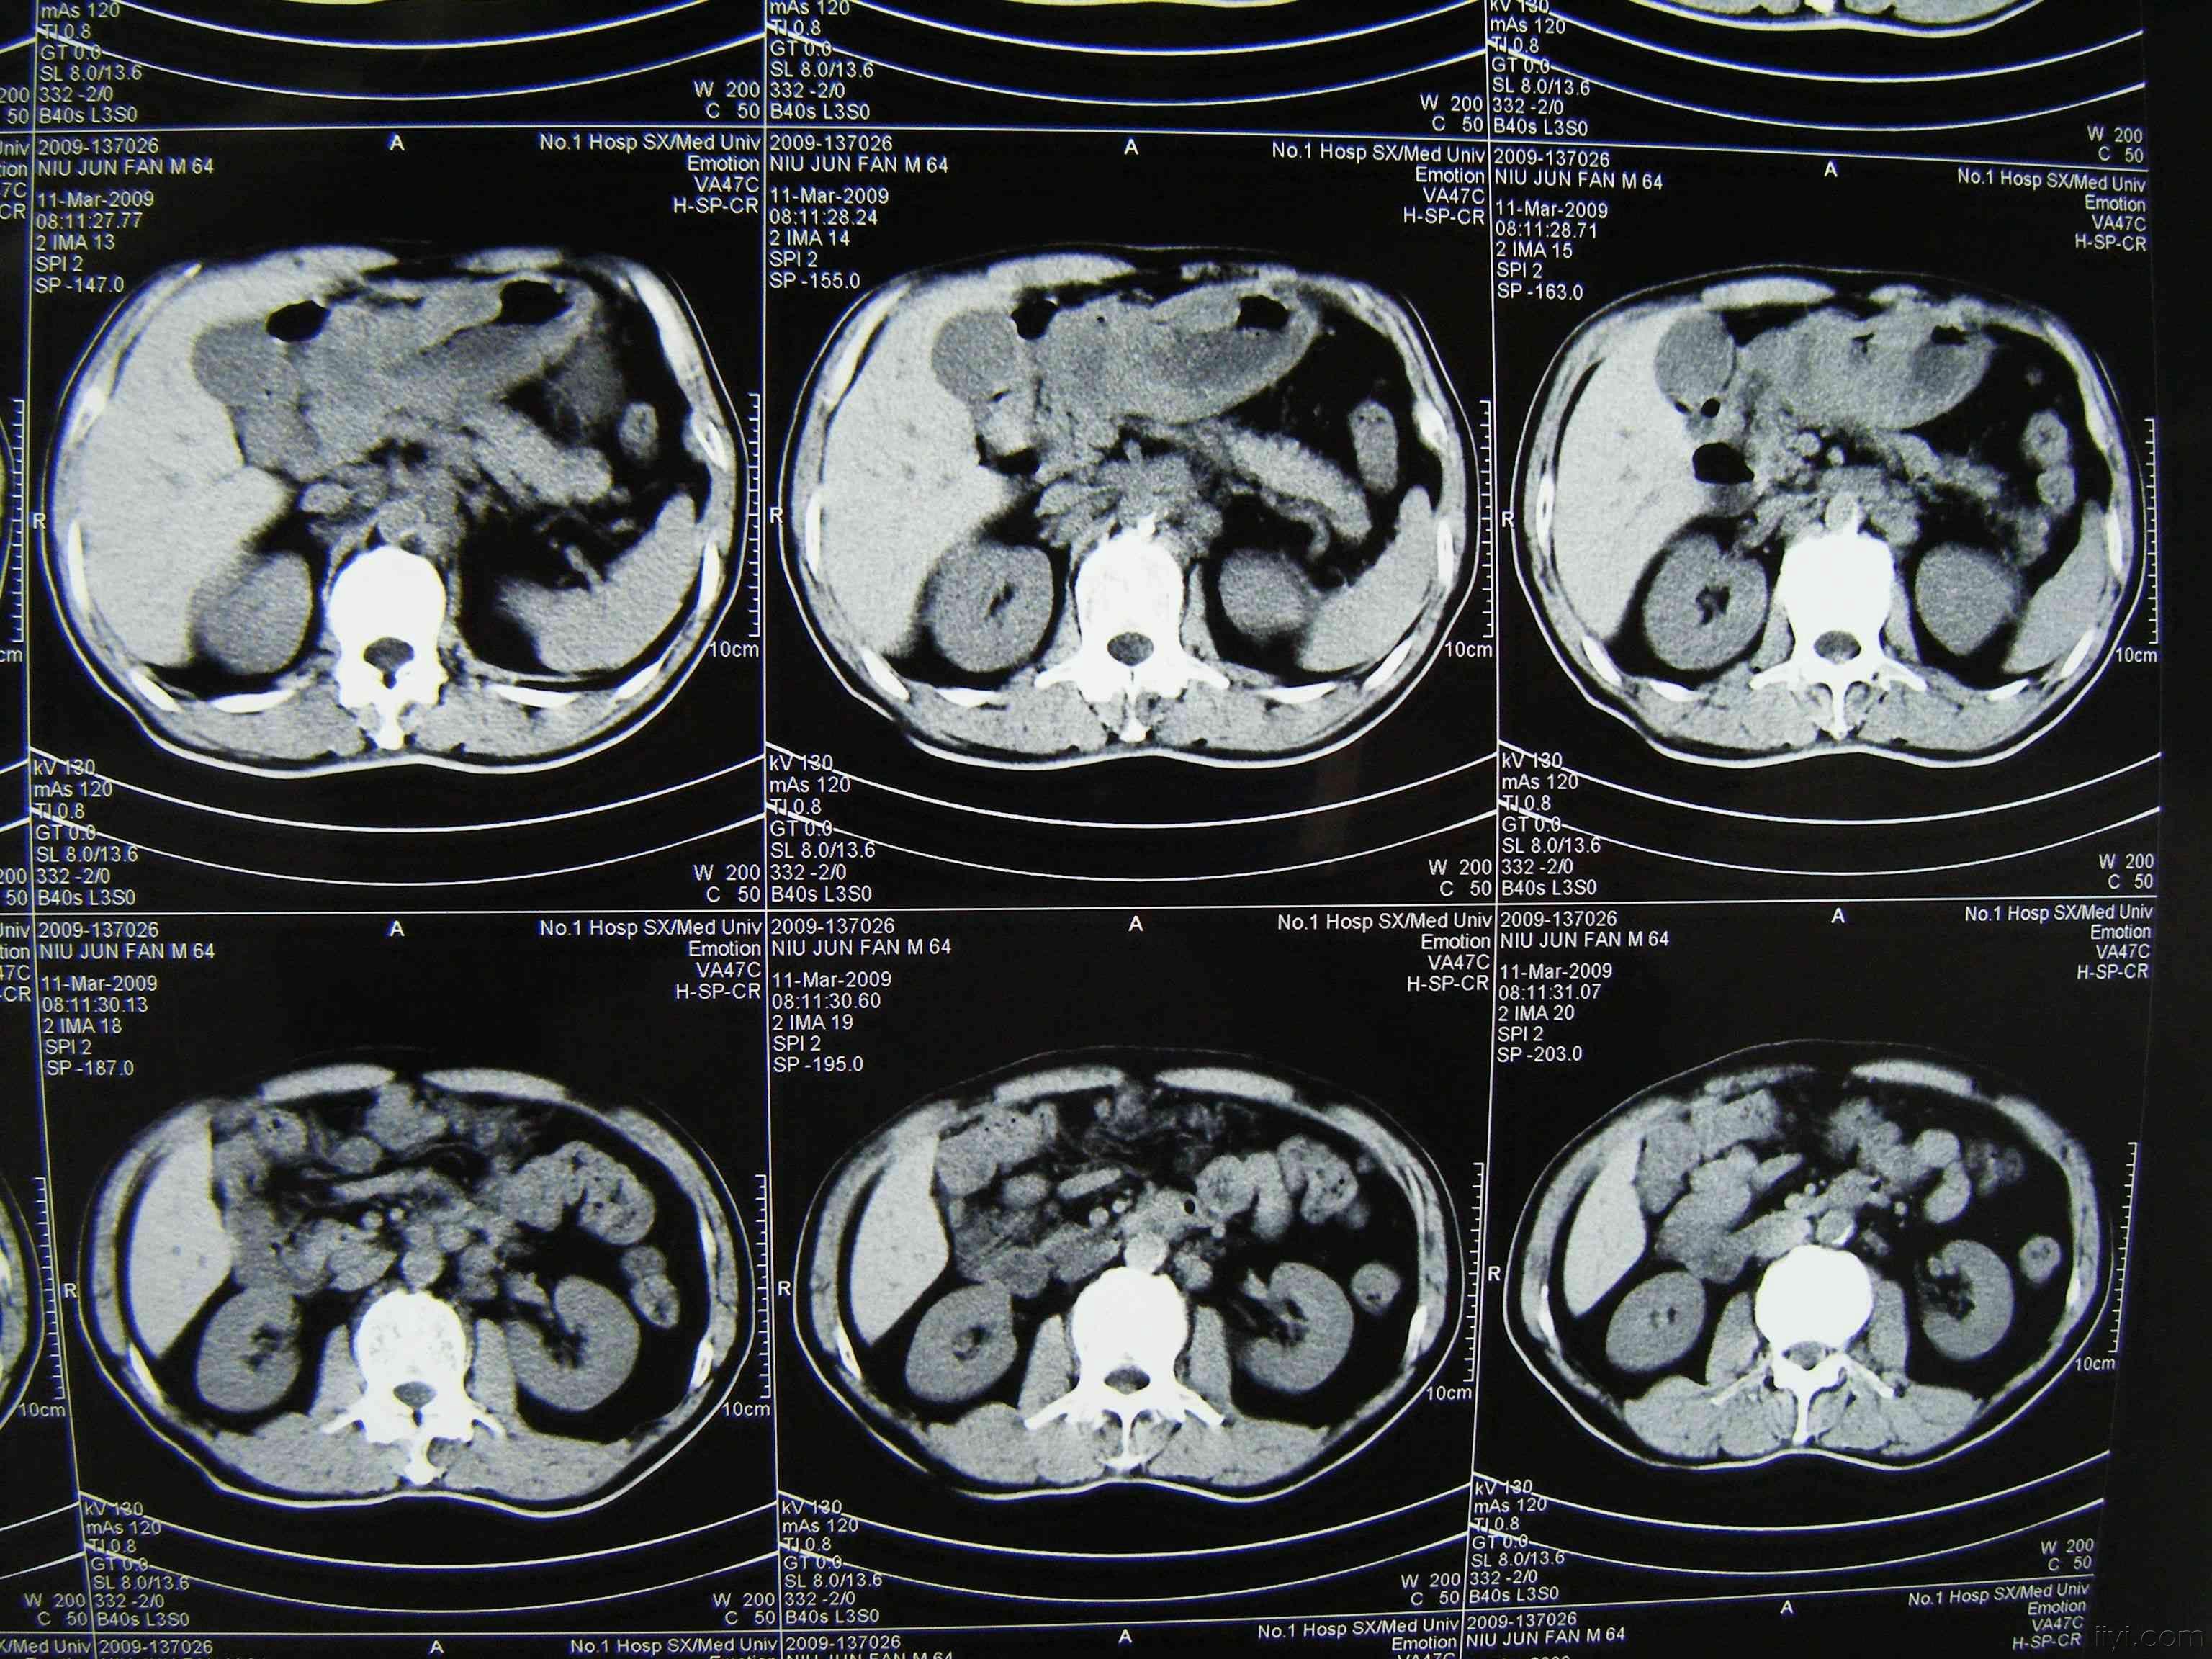 早期胃癌的片子图片